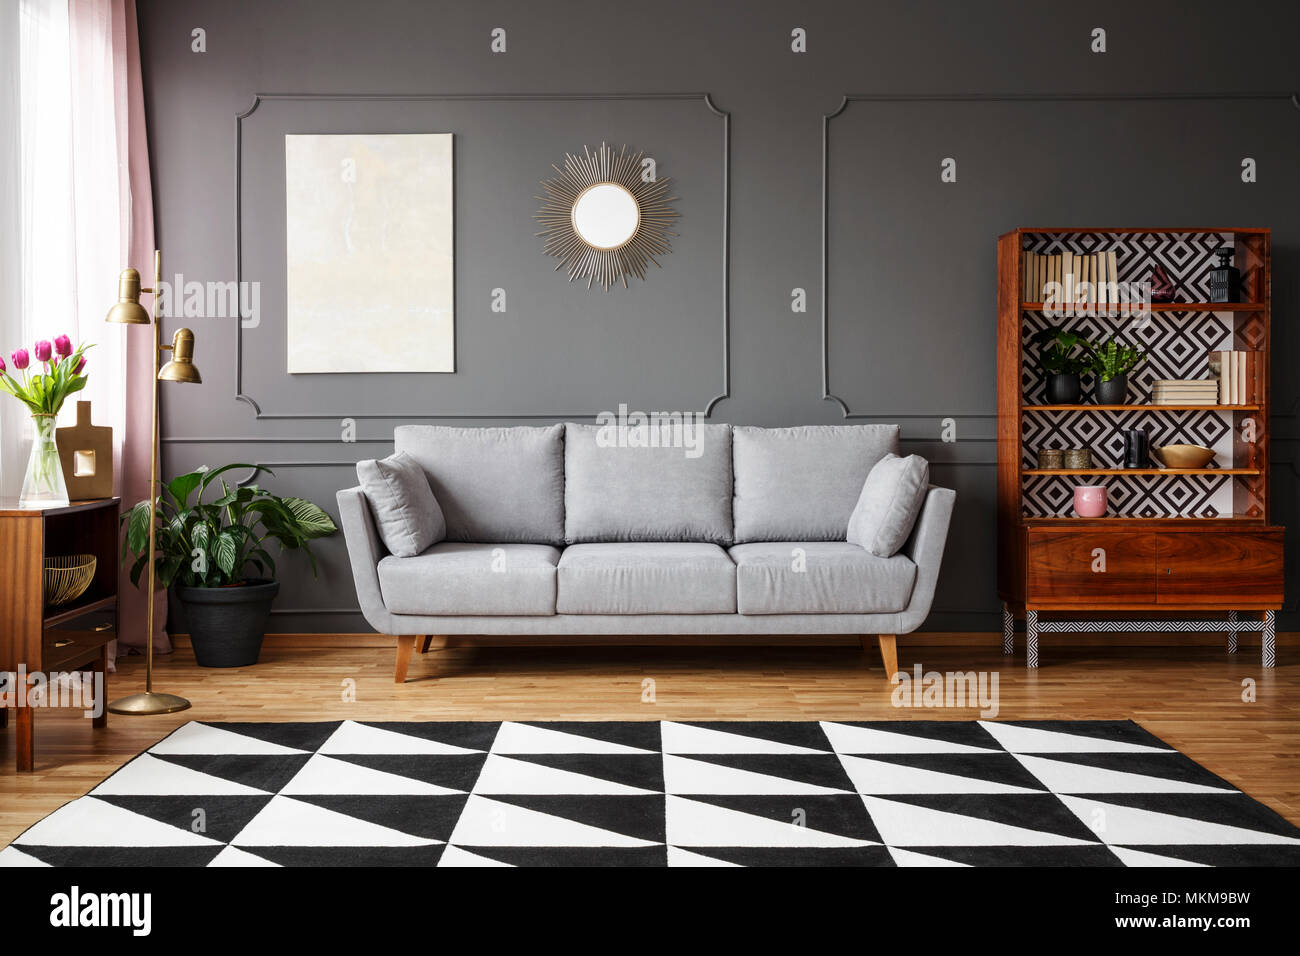 Bianco e nero Tappeto con motivo geometrico posto sul pavimento in dark living room interior con lettino grigio, vintage credenza con libri e wainsc Foto Stock